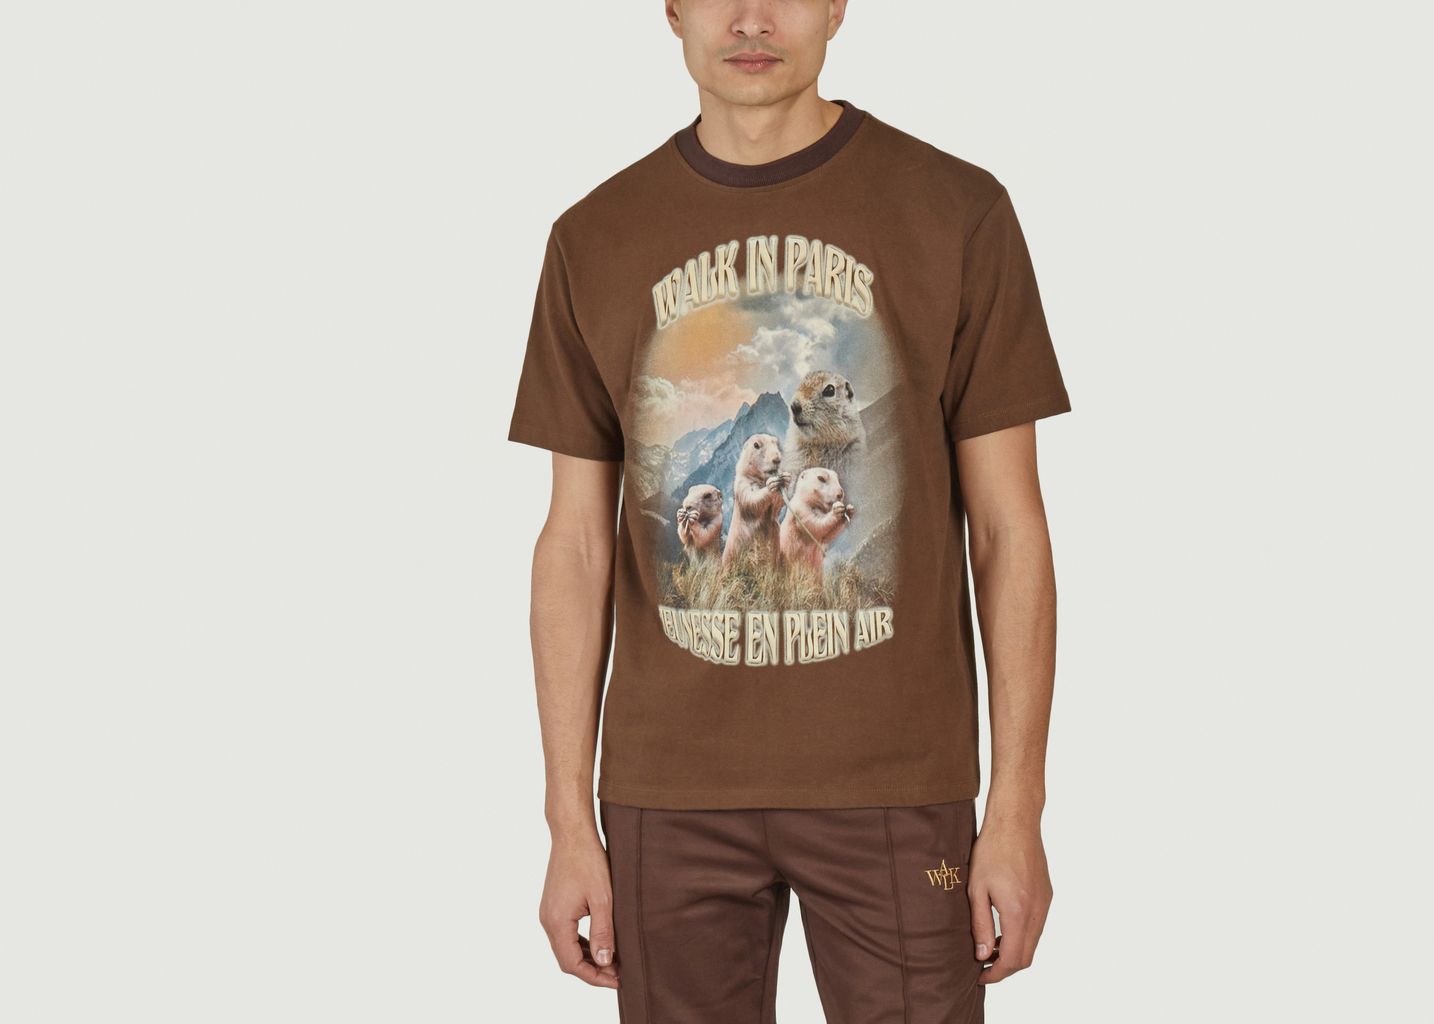 The Grisons marmot T-shirt - Walk in Paris